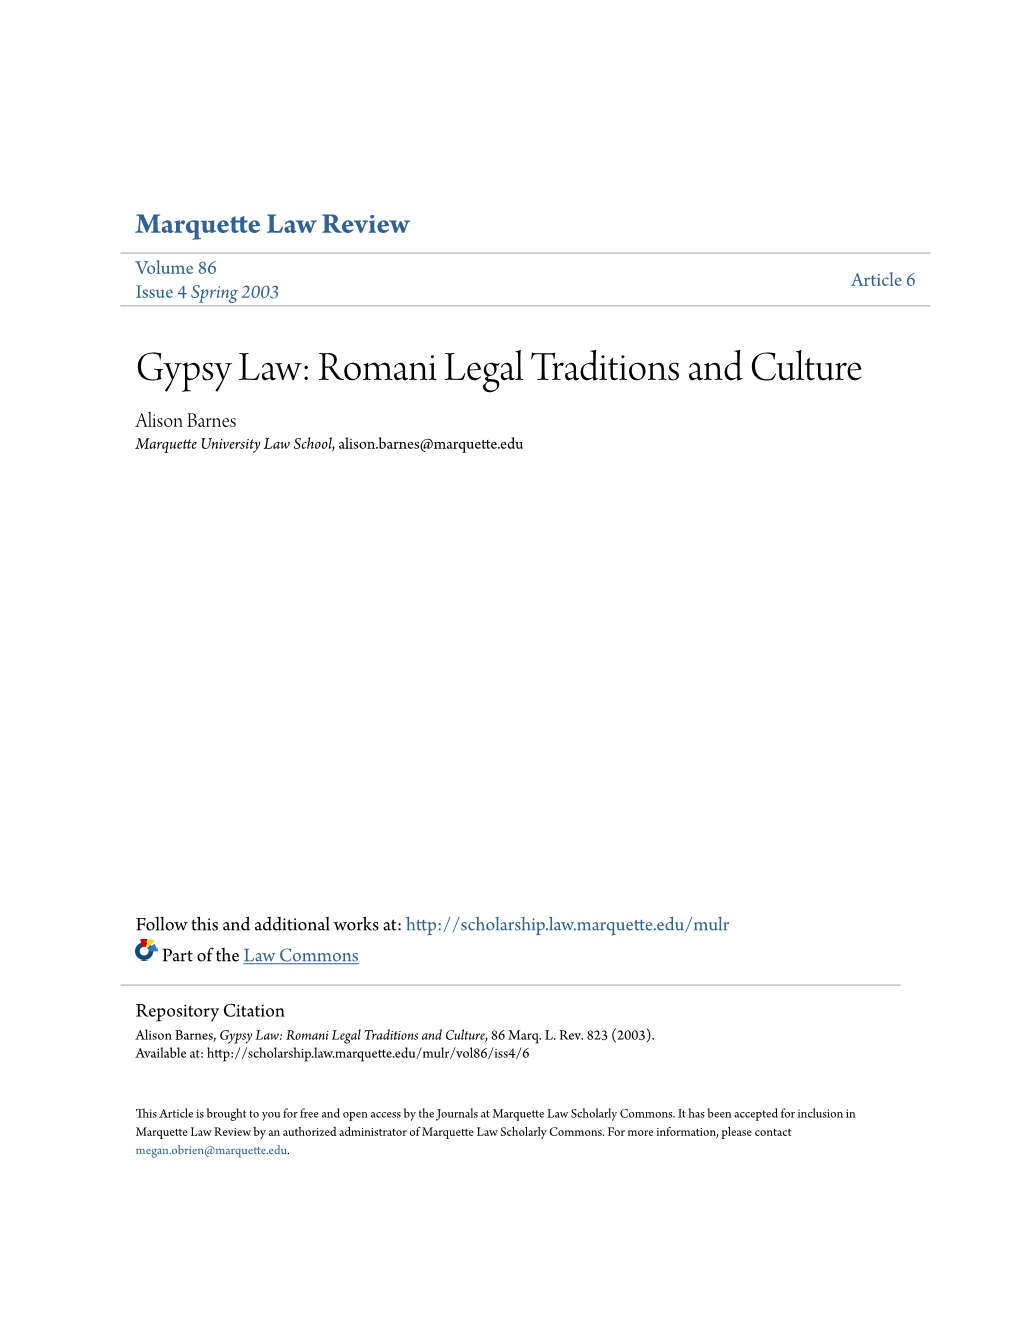 Gypsy Law: Romani Legal Traditions and Culture Alison Barnes Marquette University Law School, Alison.Barnes@Marquette.Edu